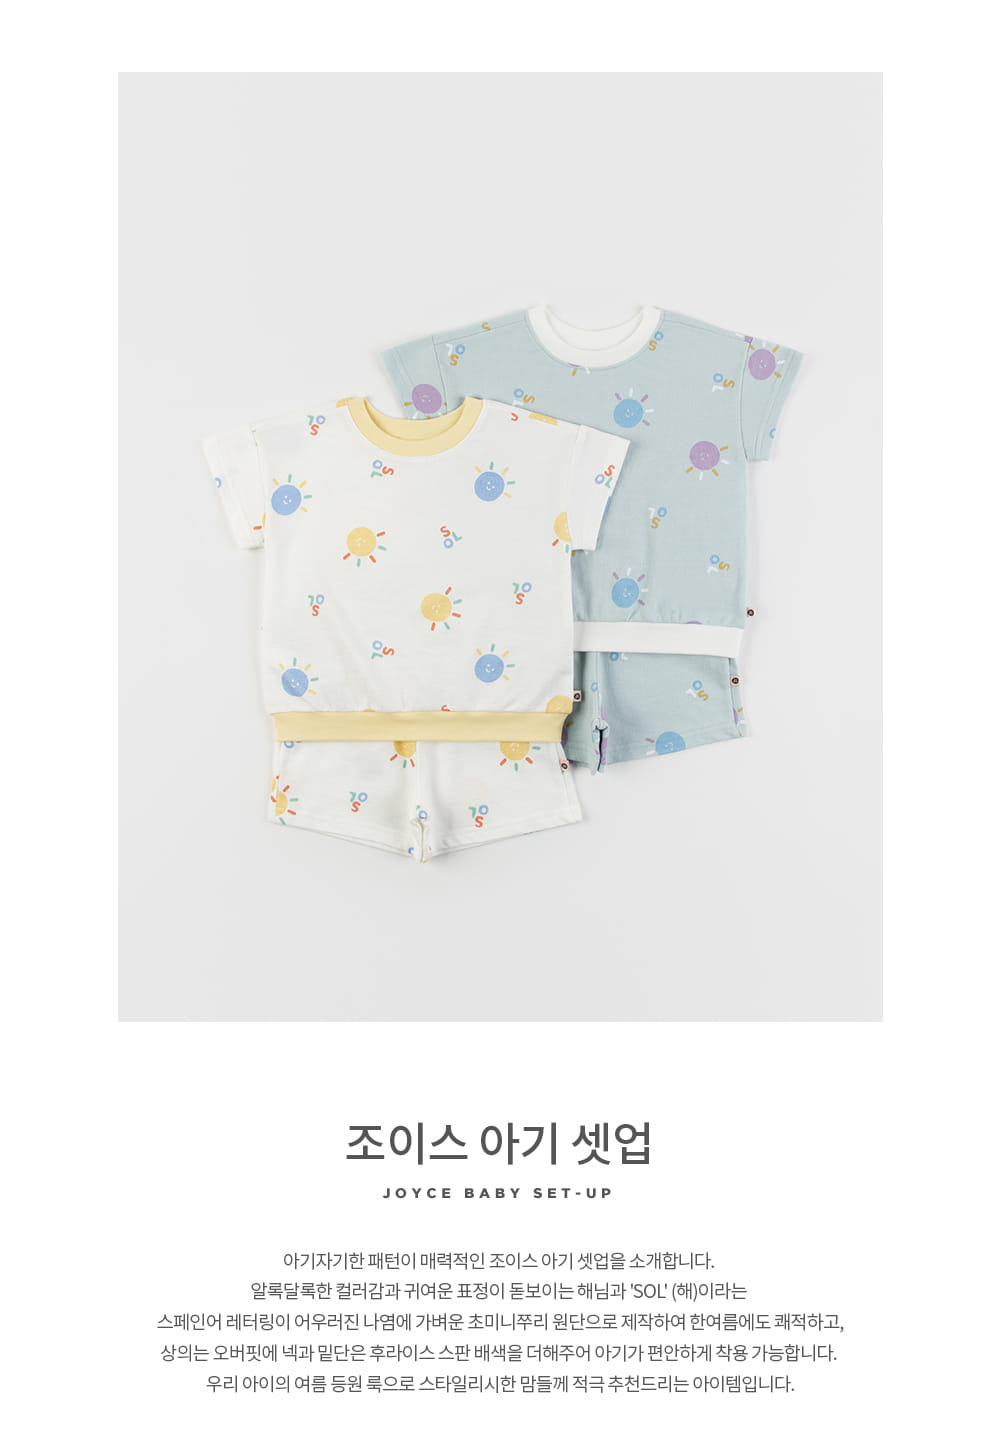 Kids Clara - Korean Baby Fashion - #babyclothing - Joyce Baby Top Bottom Set - 2